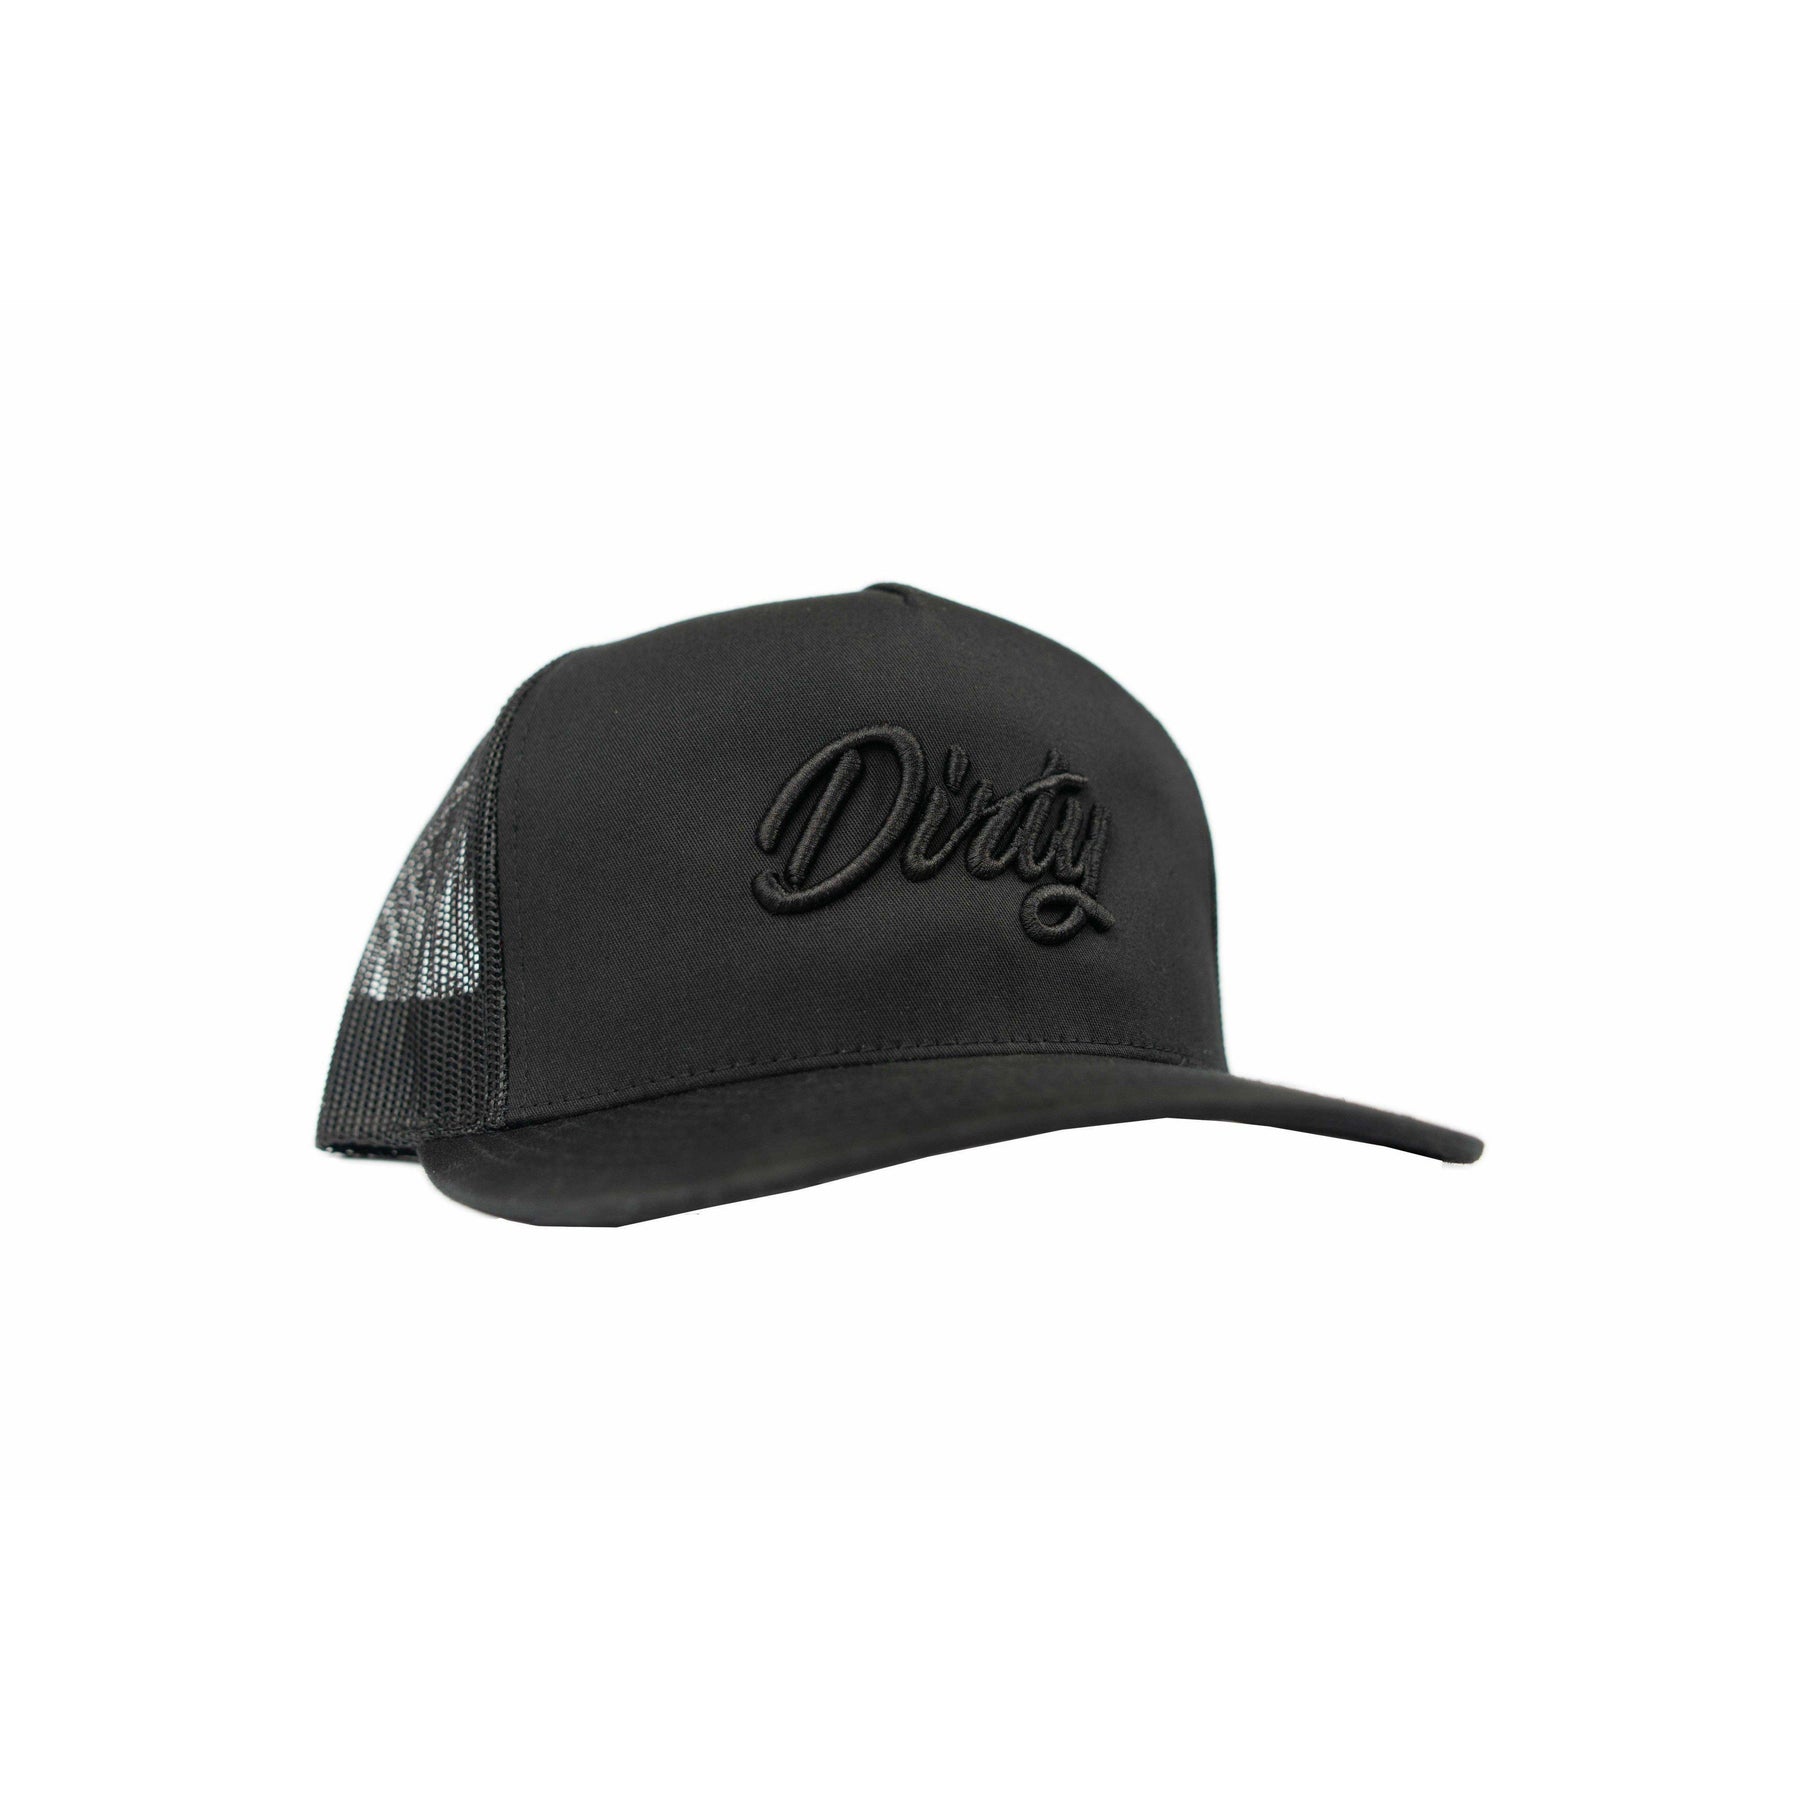 Black Edition Dirty Snapback Hat-Hat-Dirty Diesel Customs-Dirty Diesel Customs